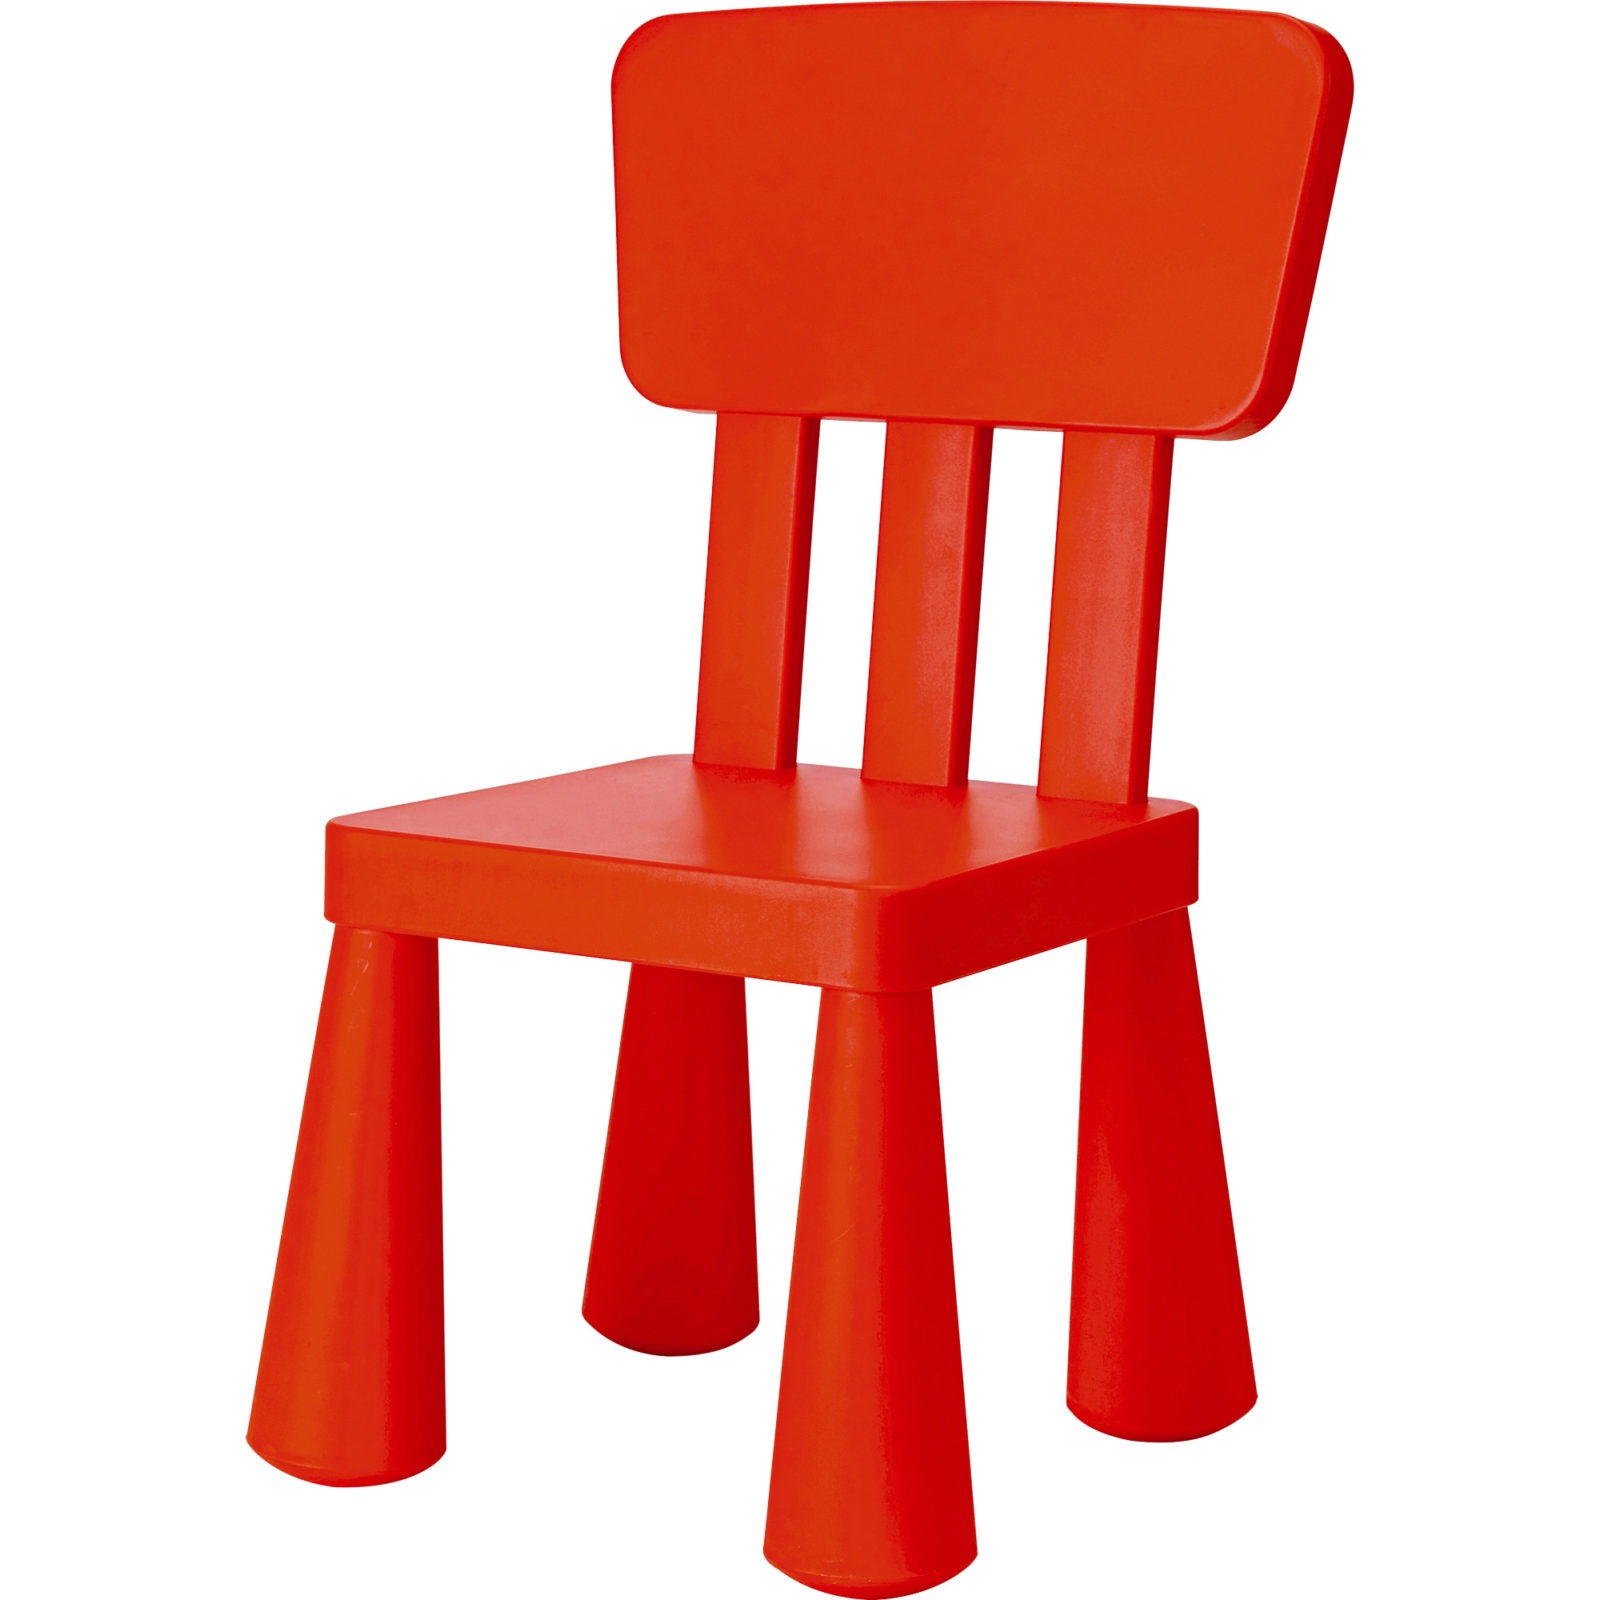 Röd plaststol, MAMMUT, gjord för barn i lekfulla proportioner.